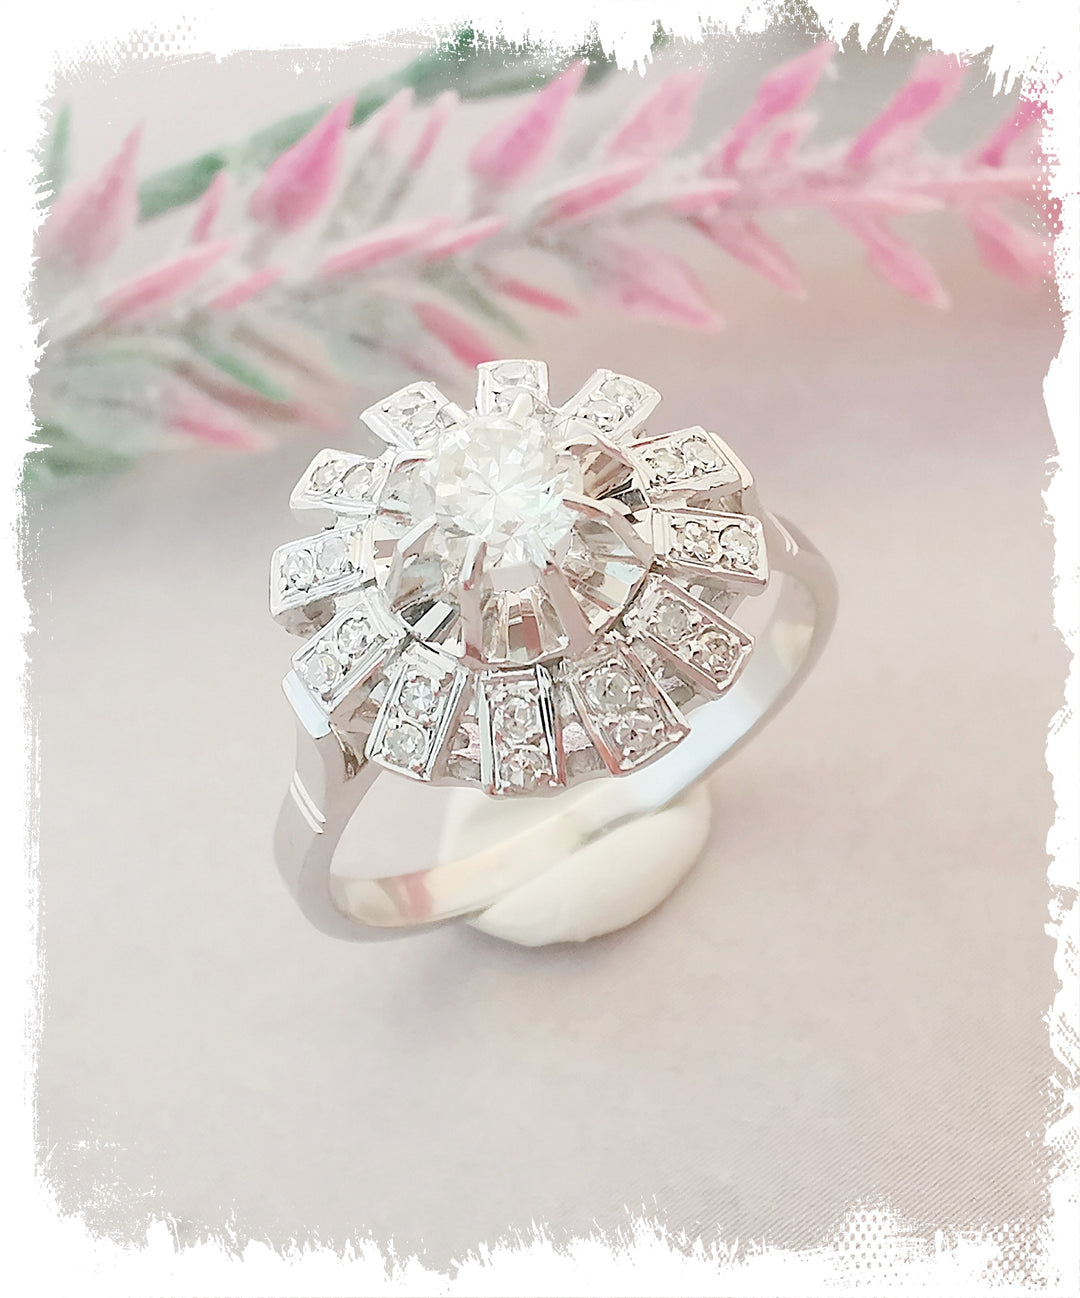 Bague Fleur Ancienne / Diamants / Or Blanc 18 K / 18 carats / (750°/°°)